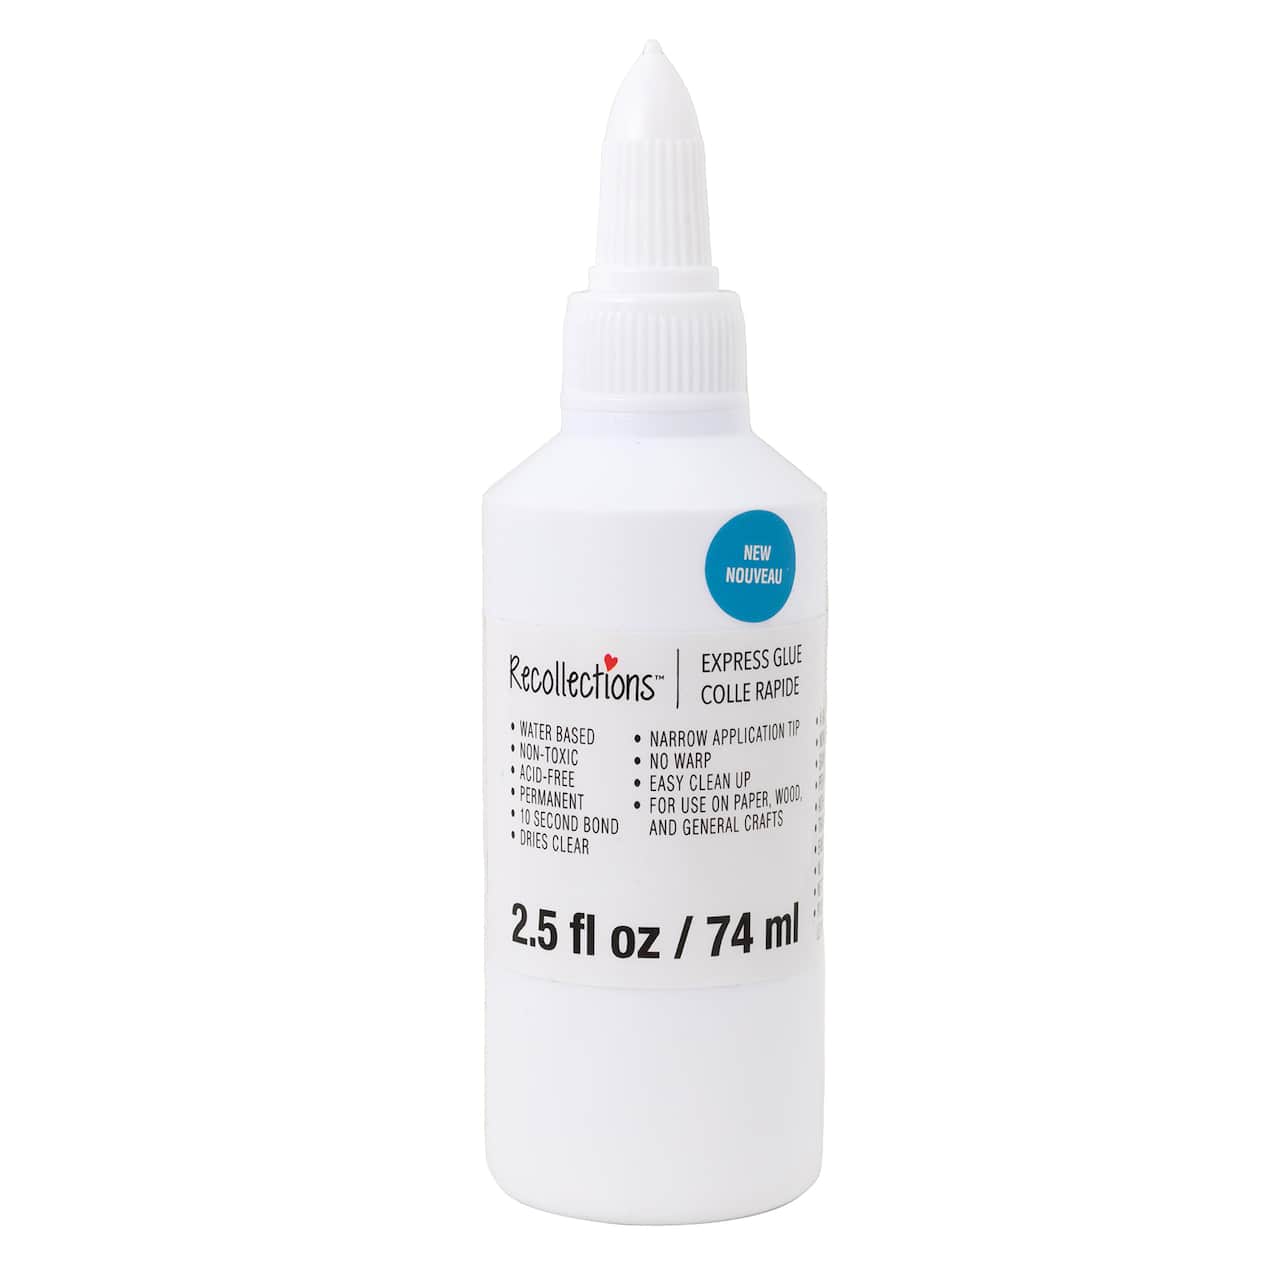 Recollections Express Liquid Glue - 2.5 fl oz